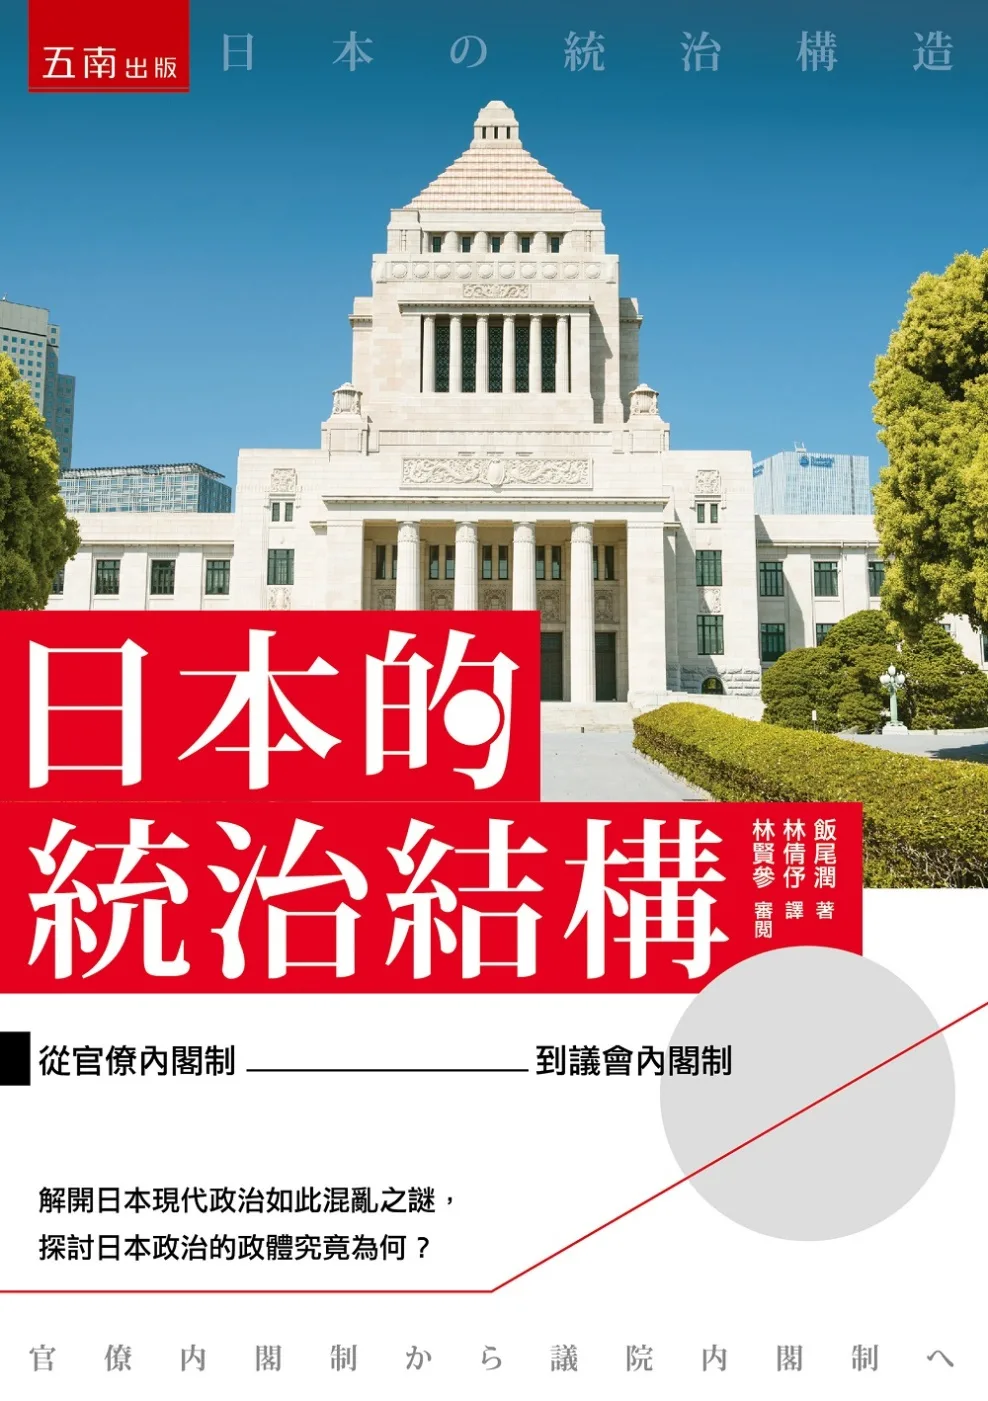 日本的統治結構